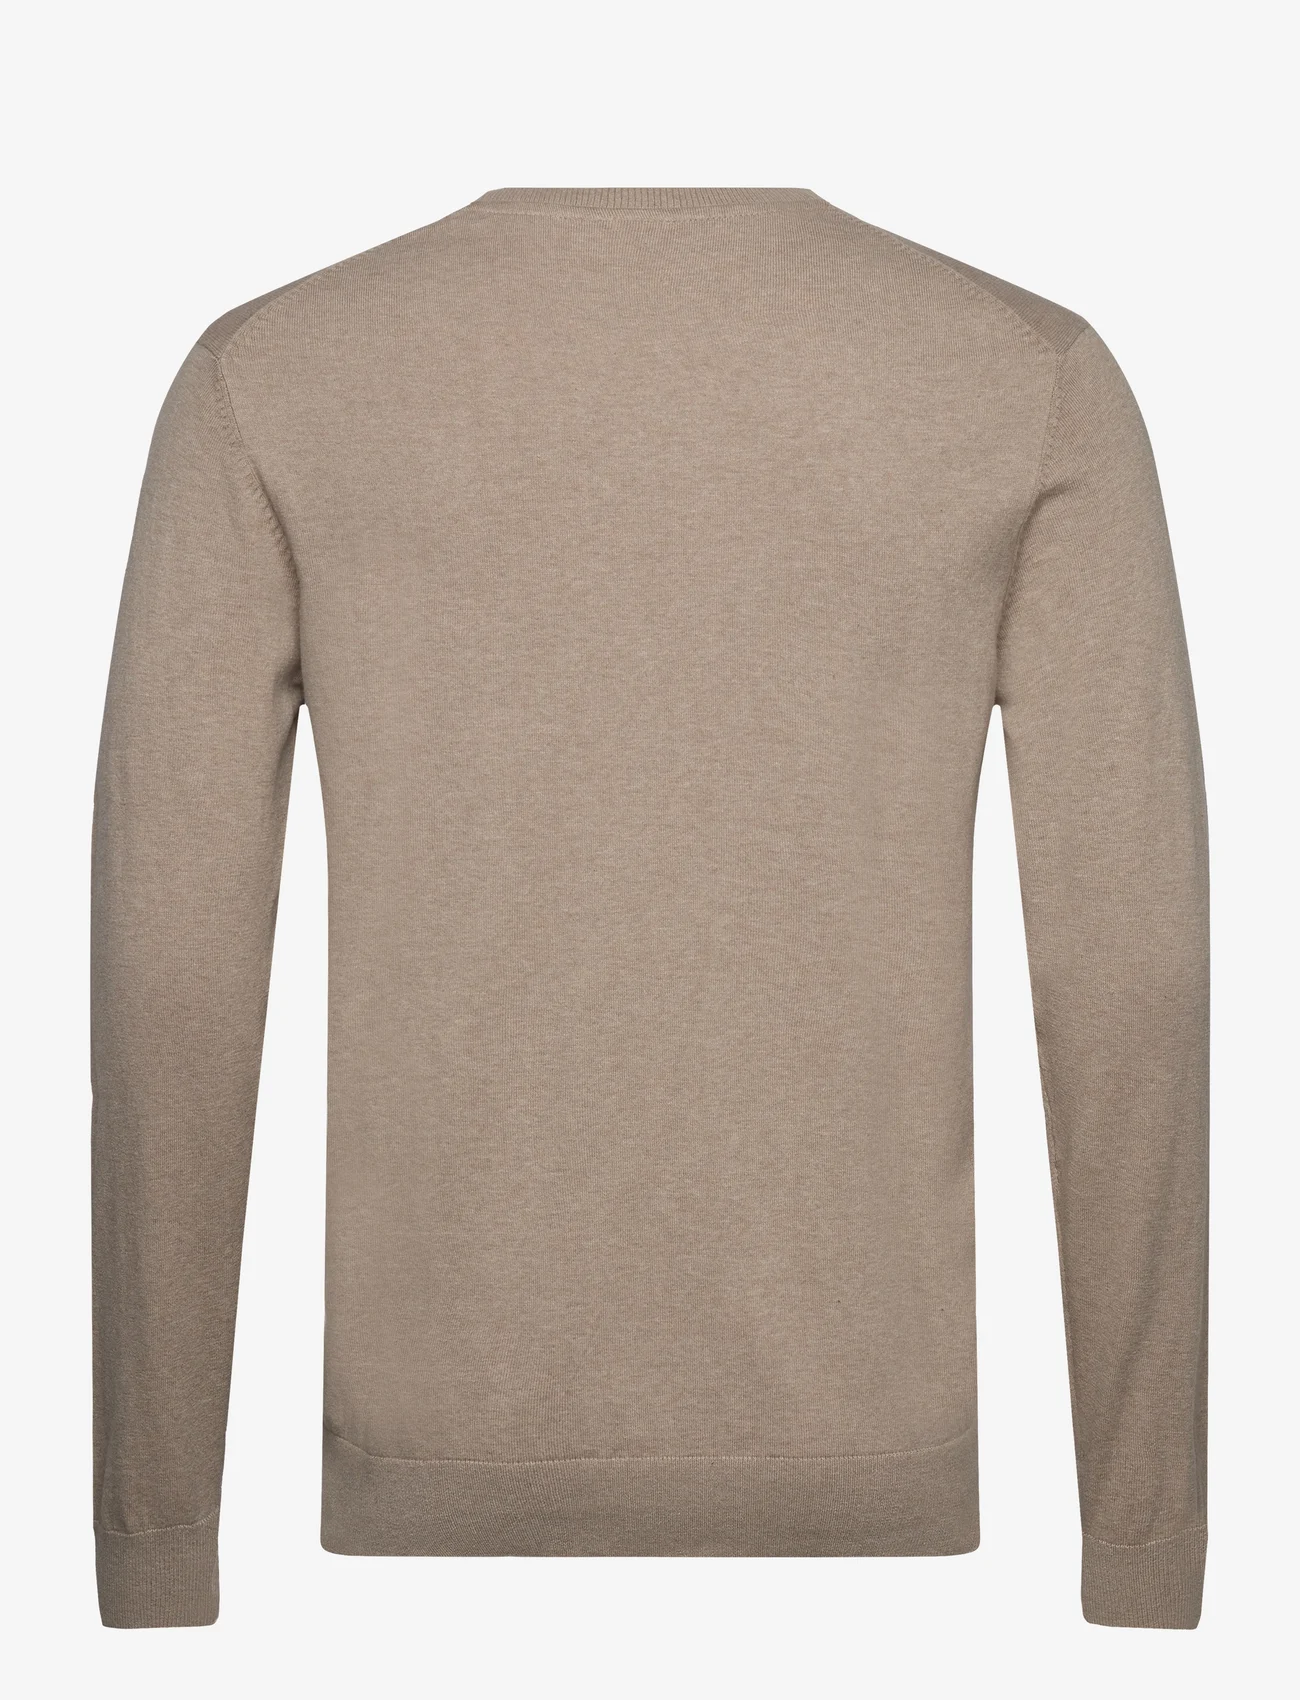 Lindbergh - Knitted O-neck sweater - strik med rund hals - sand mel - 1